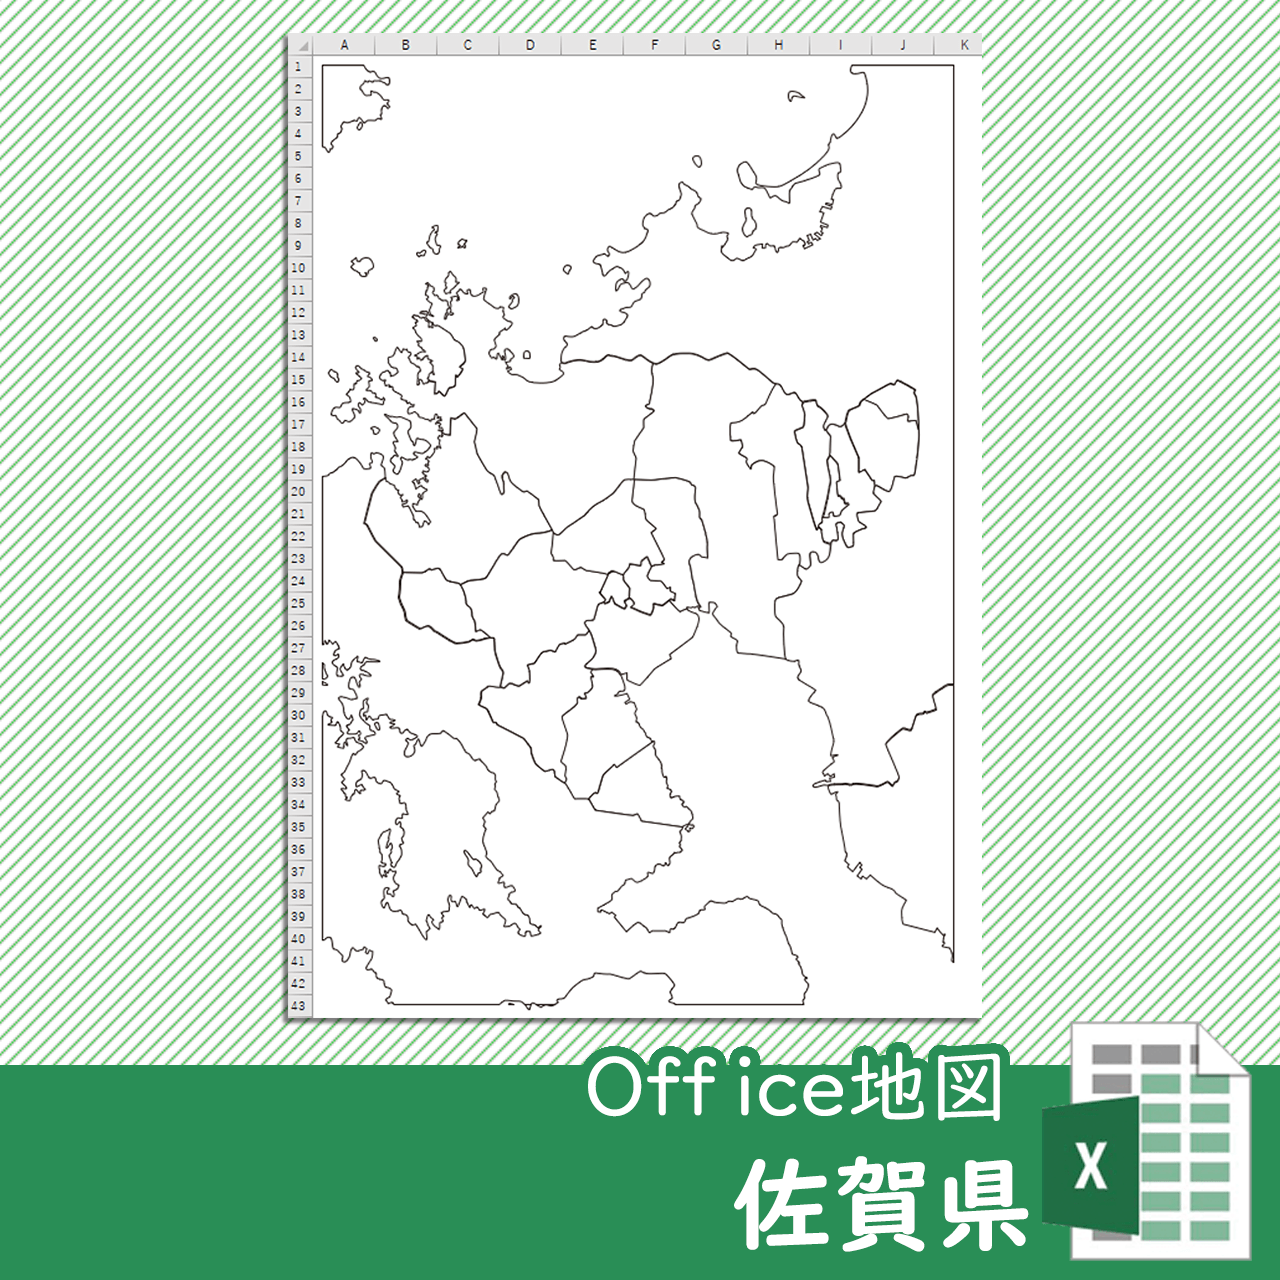 佐賀県のOffice地図のサムネイル